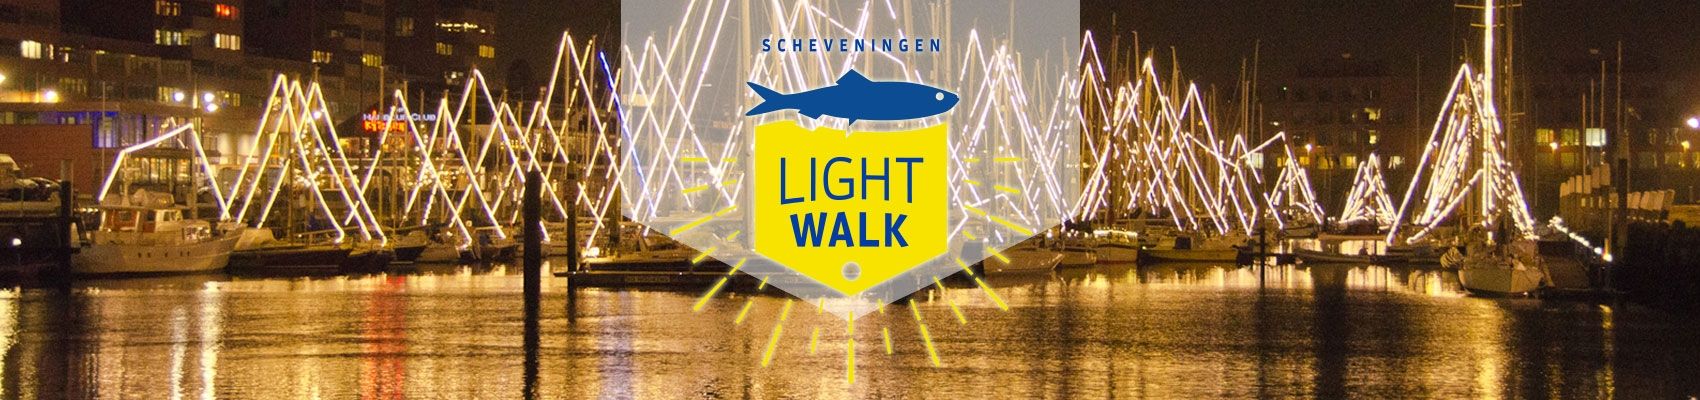 Scheveningen light walk